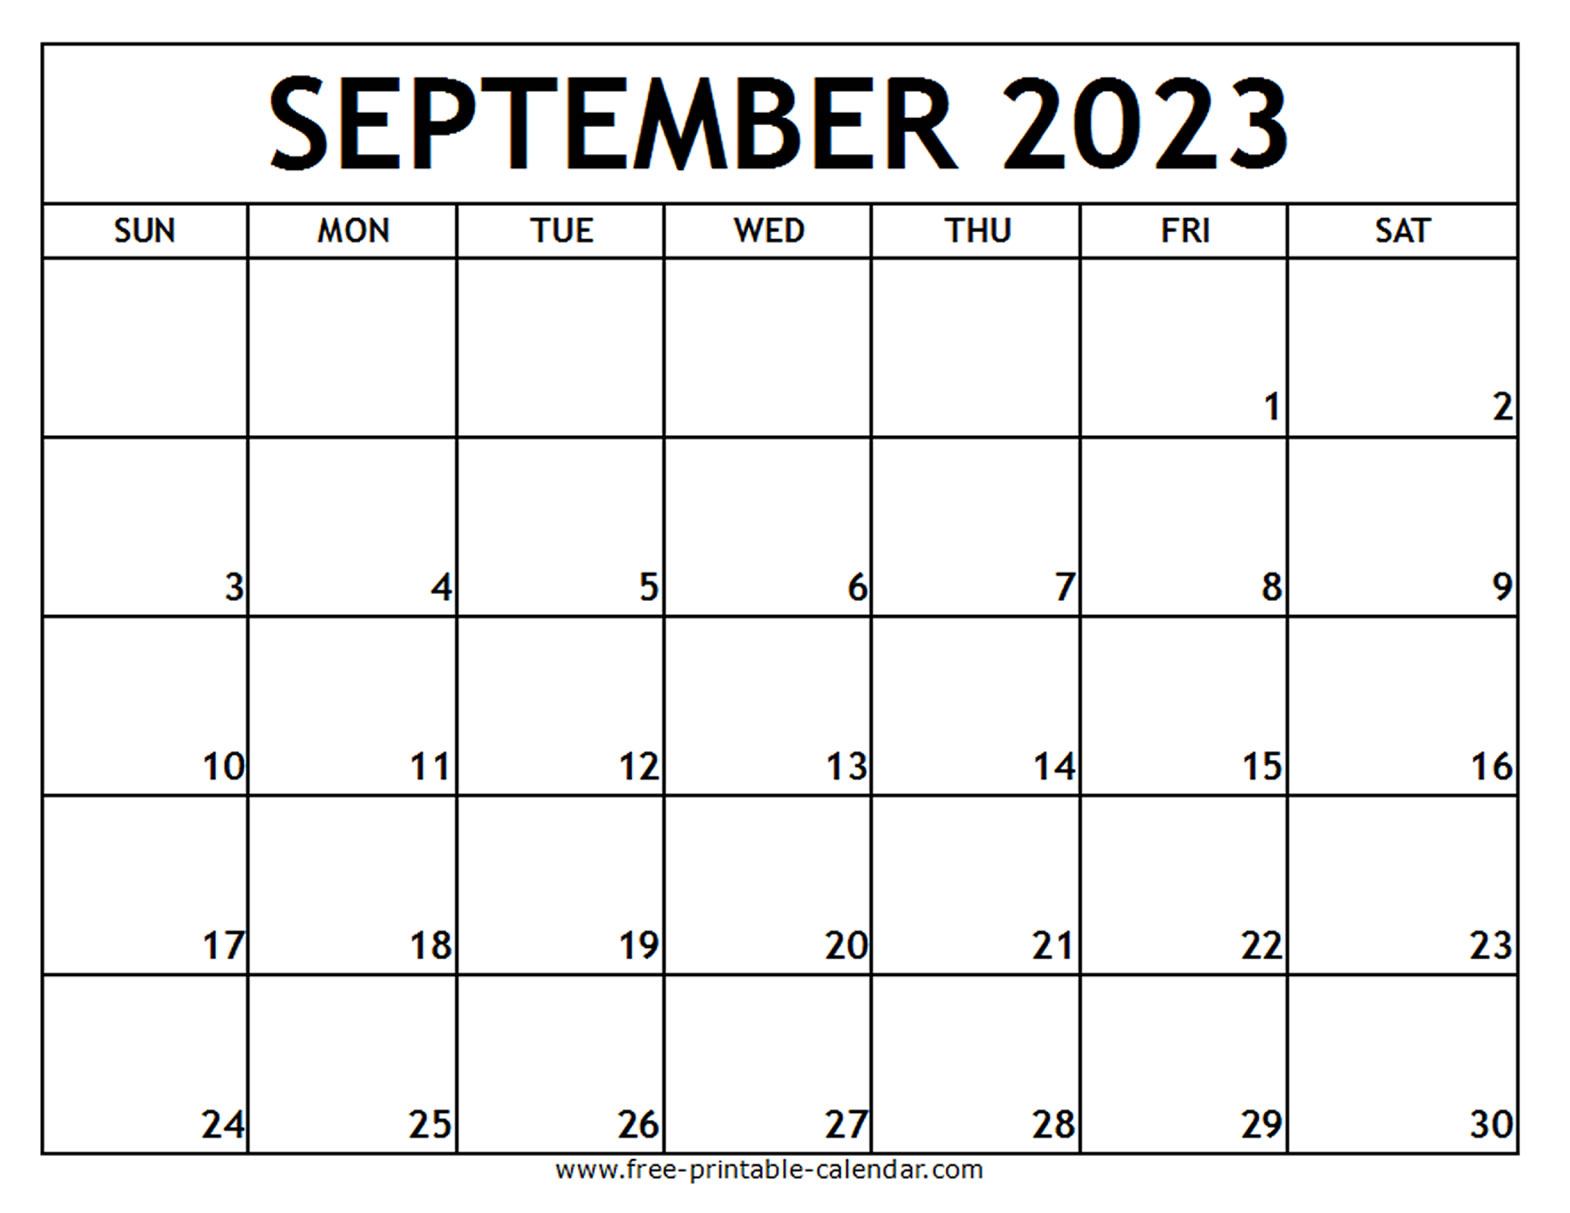 march-2023-calendar-canada-get-calendar-2023-update-september-2023